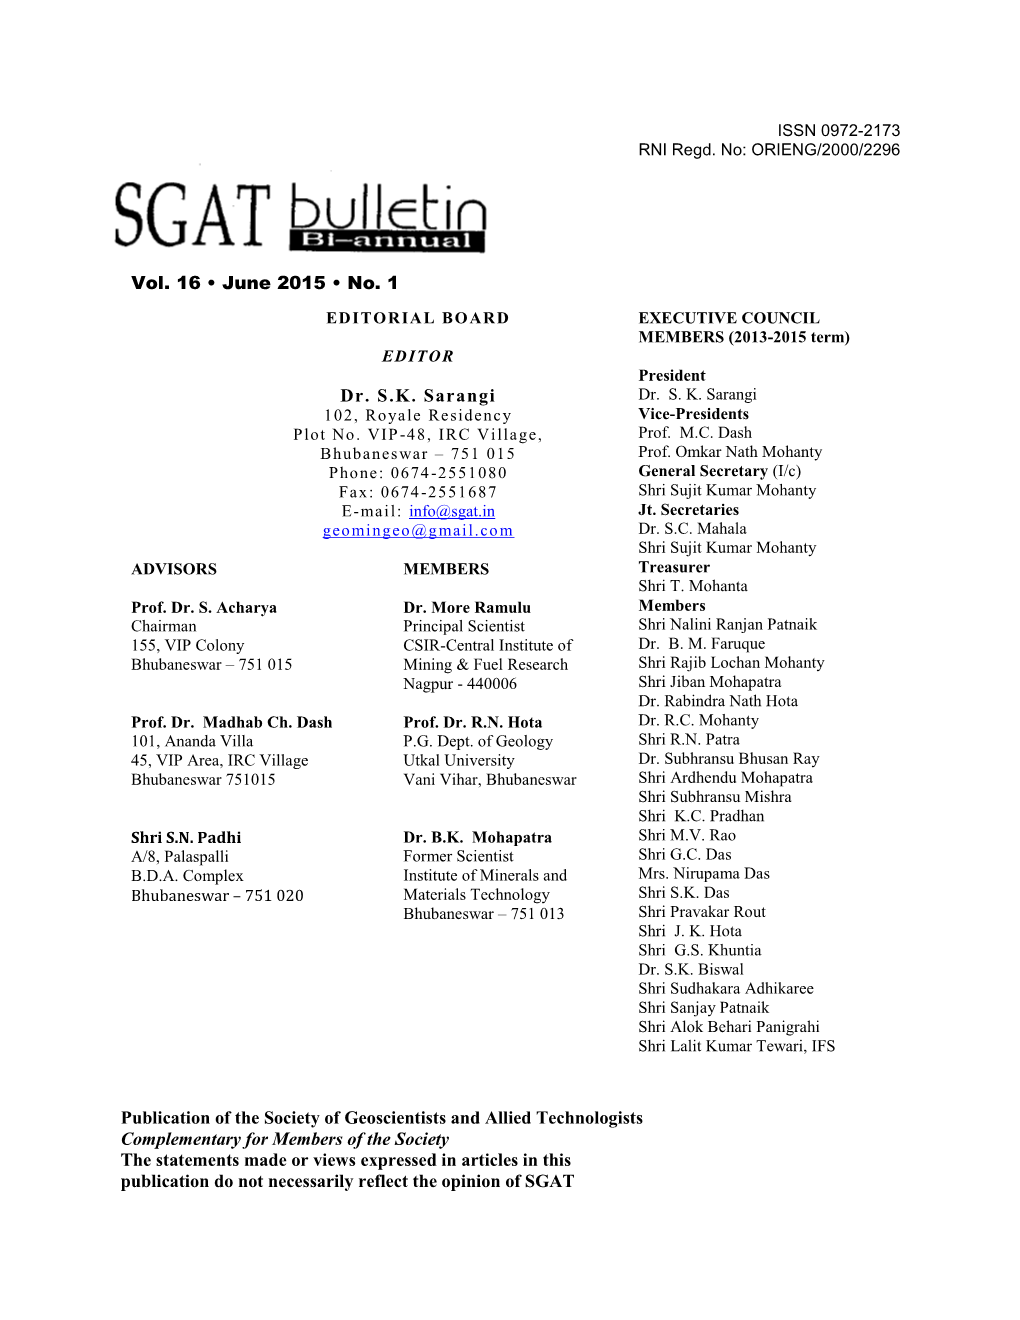 SGAT Bulletin June 2015